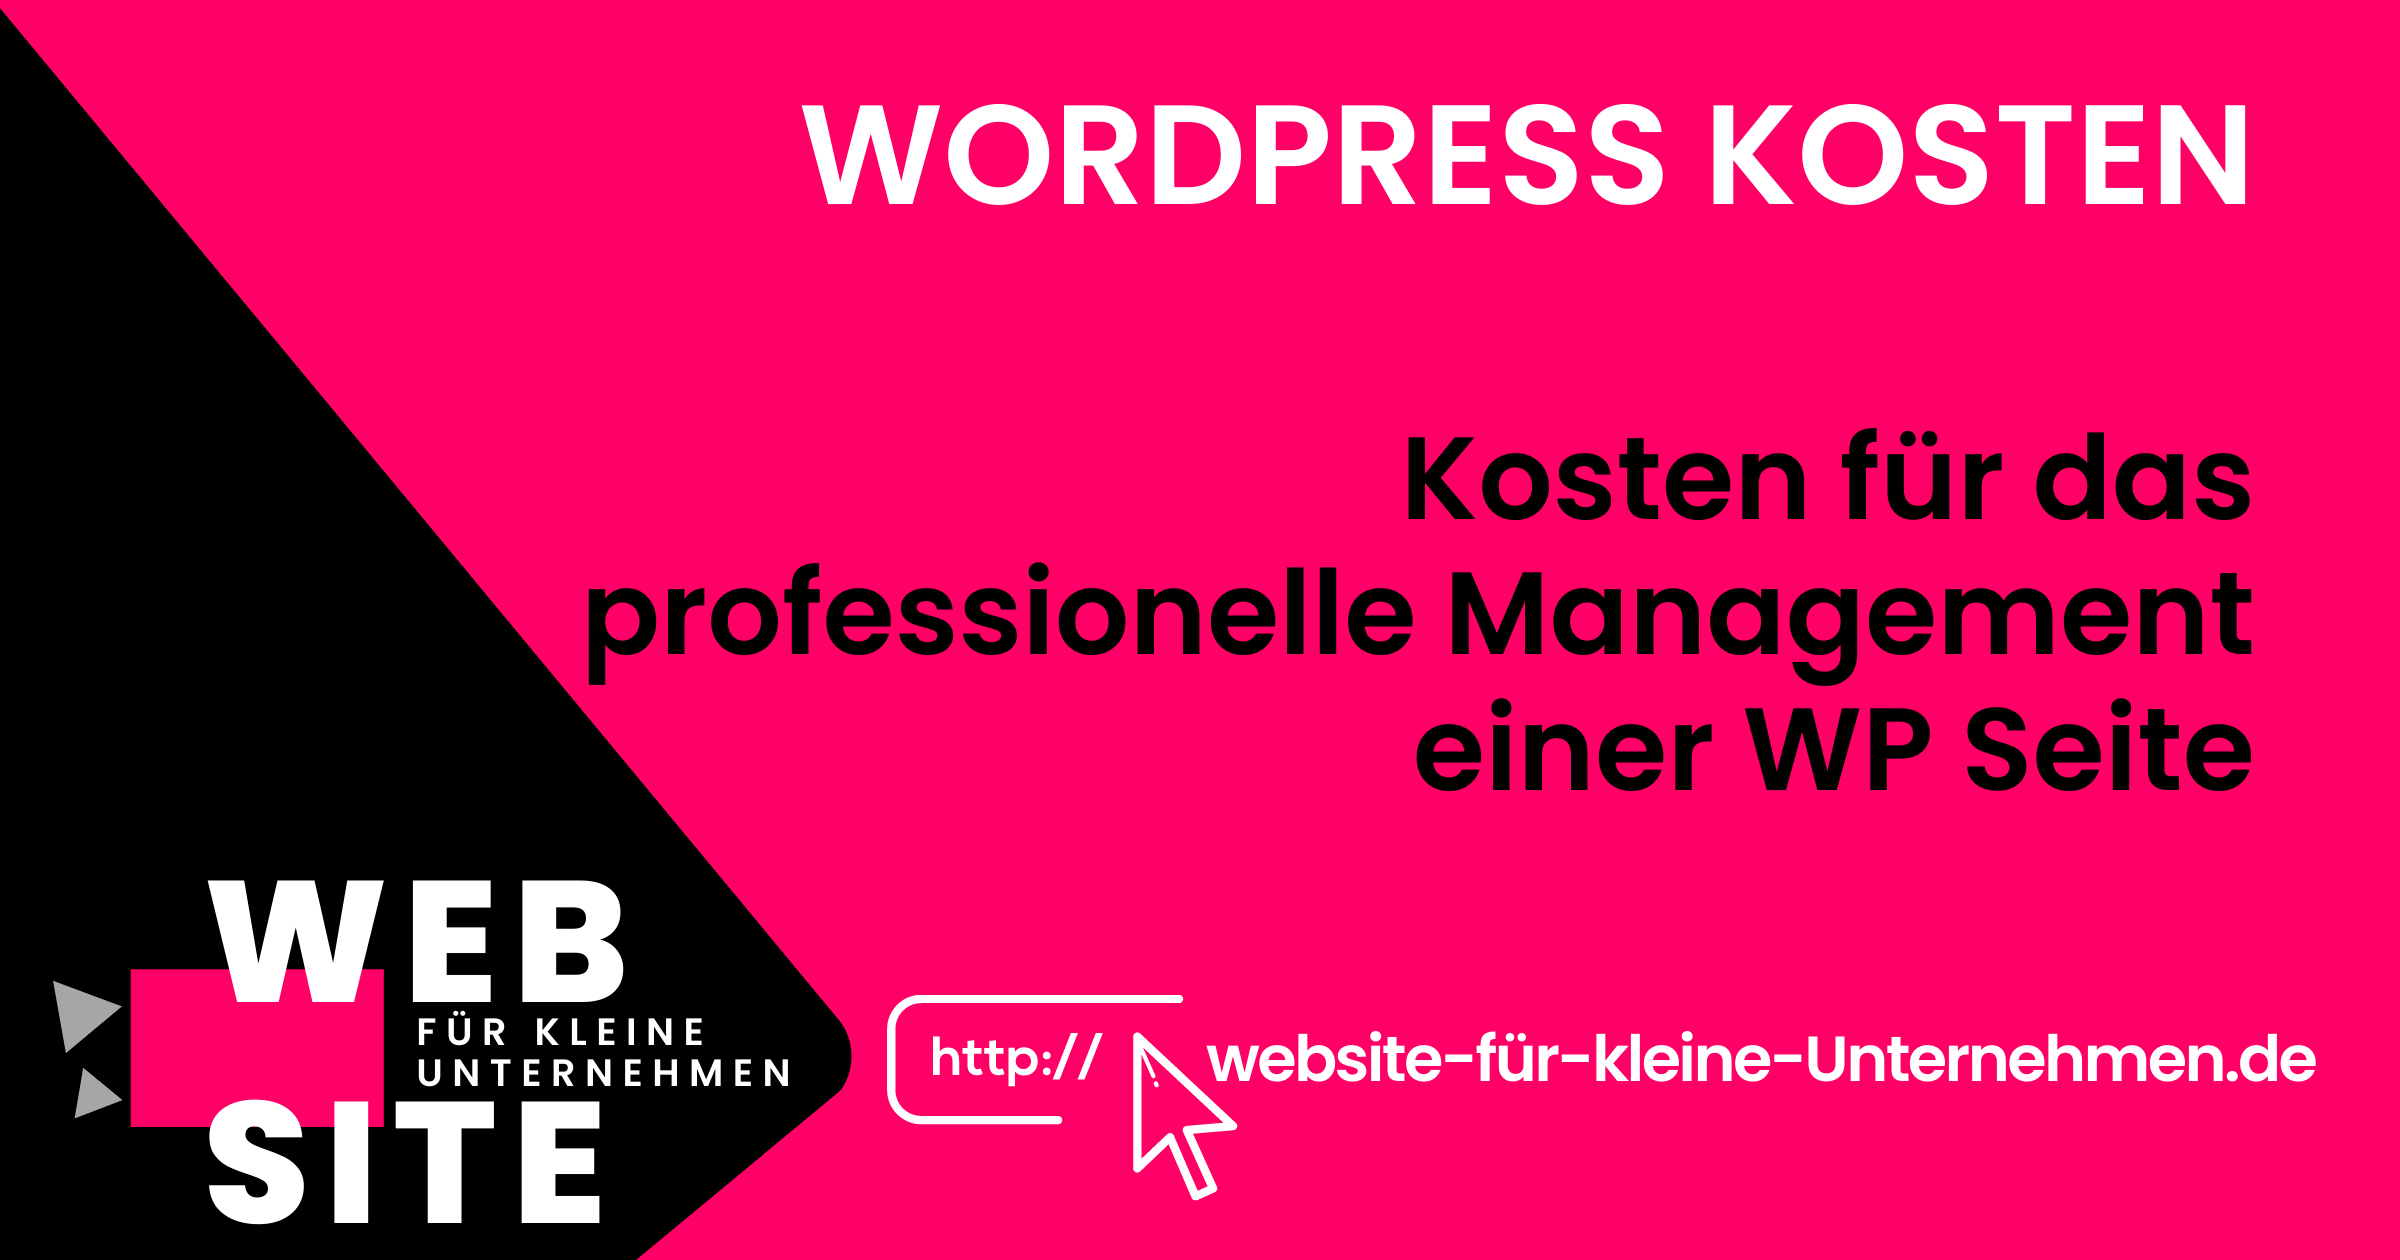 Wordpress Kosten - Website für kleine Unternehmen - Professionelle Unterhaltung WP Seite